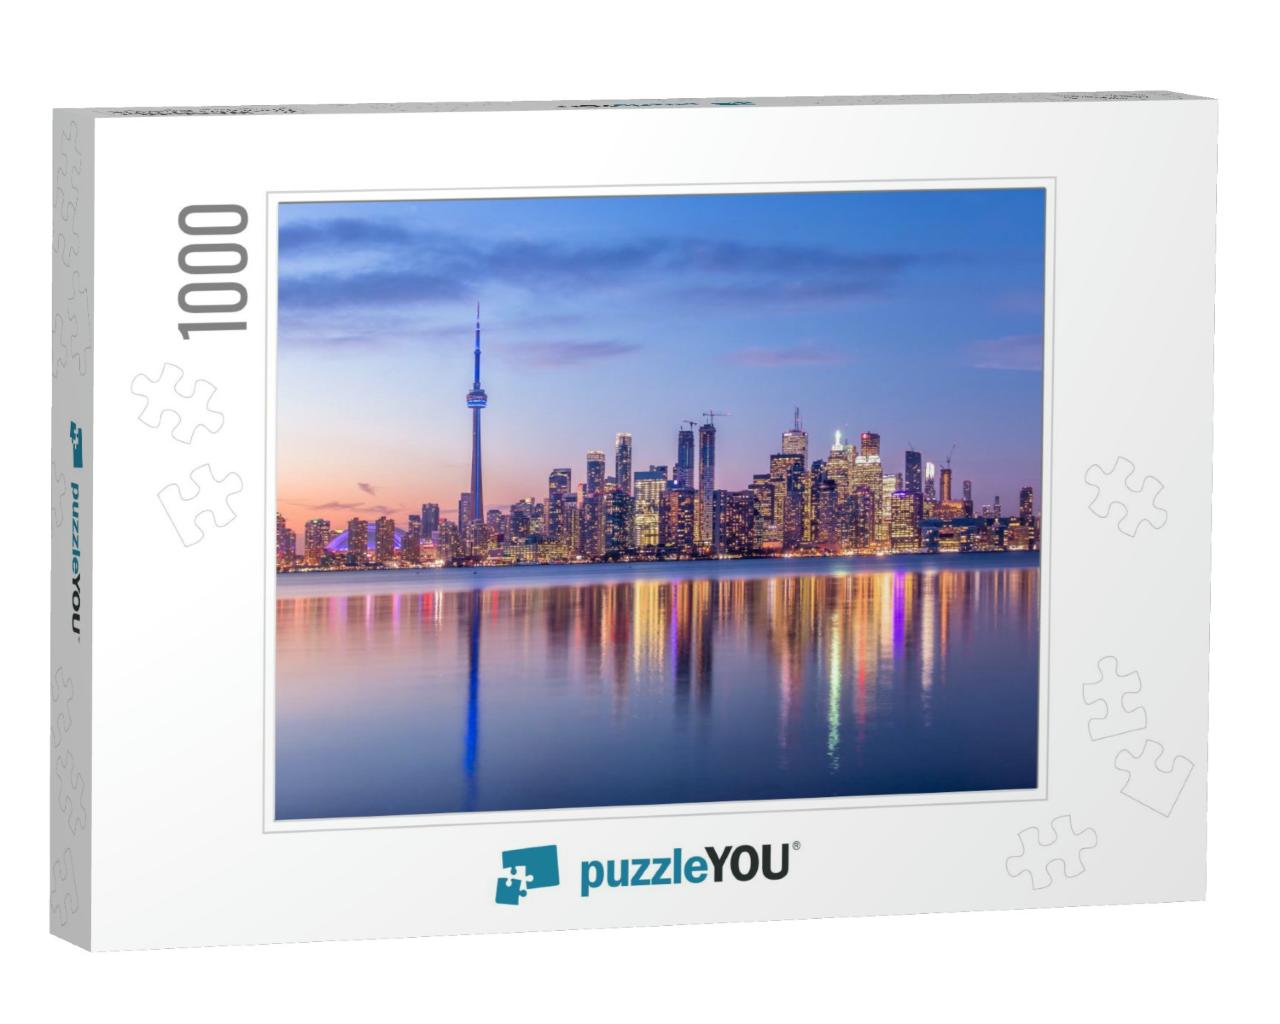 Toronto Skyline with Purple Light - Toronto, Ontario, Can... Jigsaw Puzzle with 1000 pieces